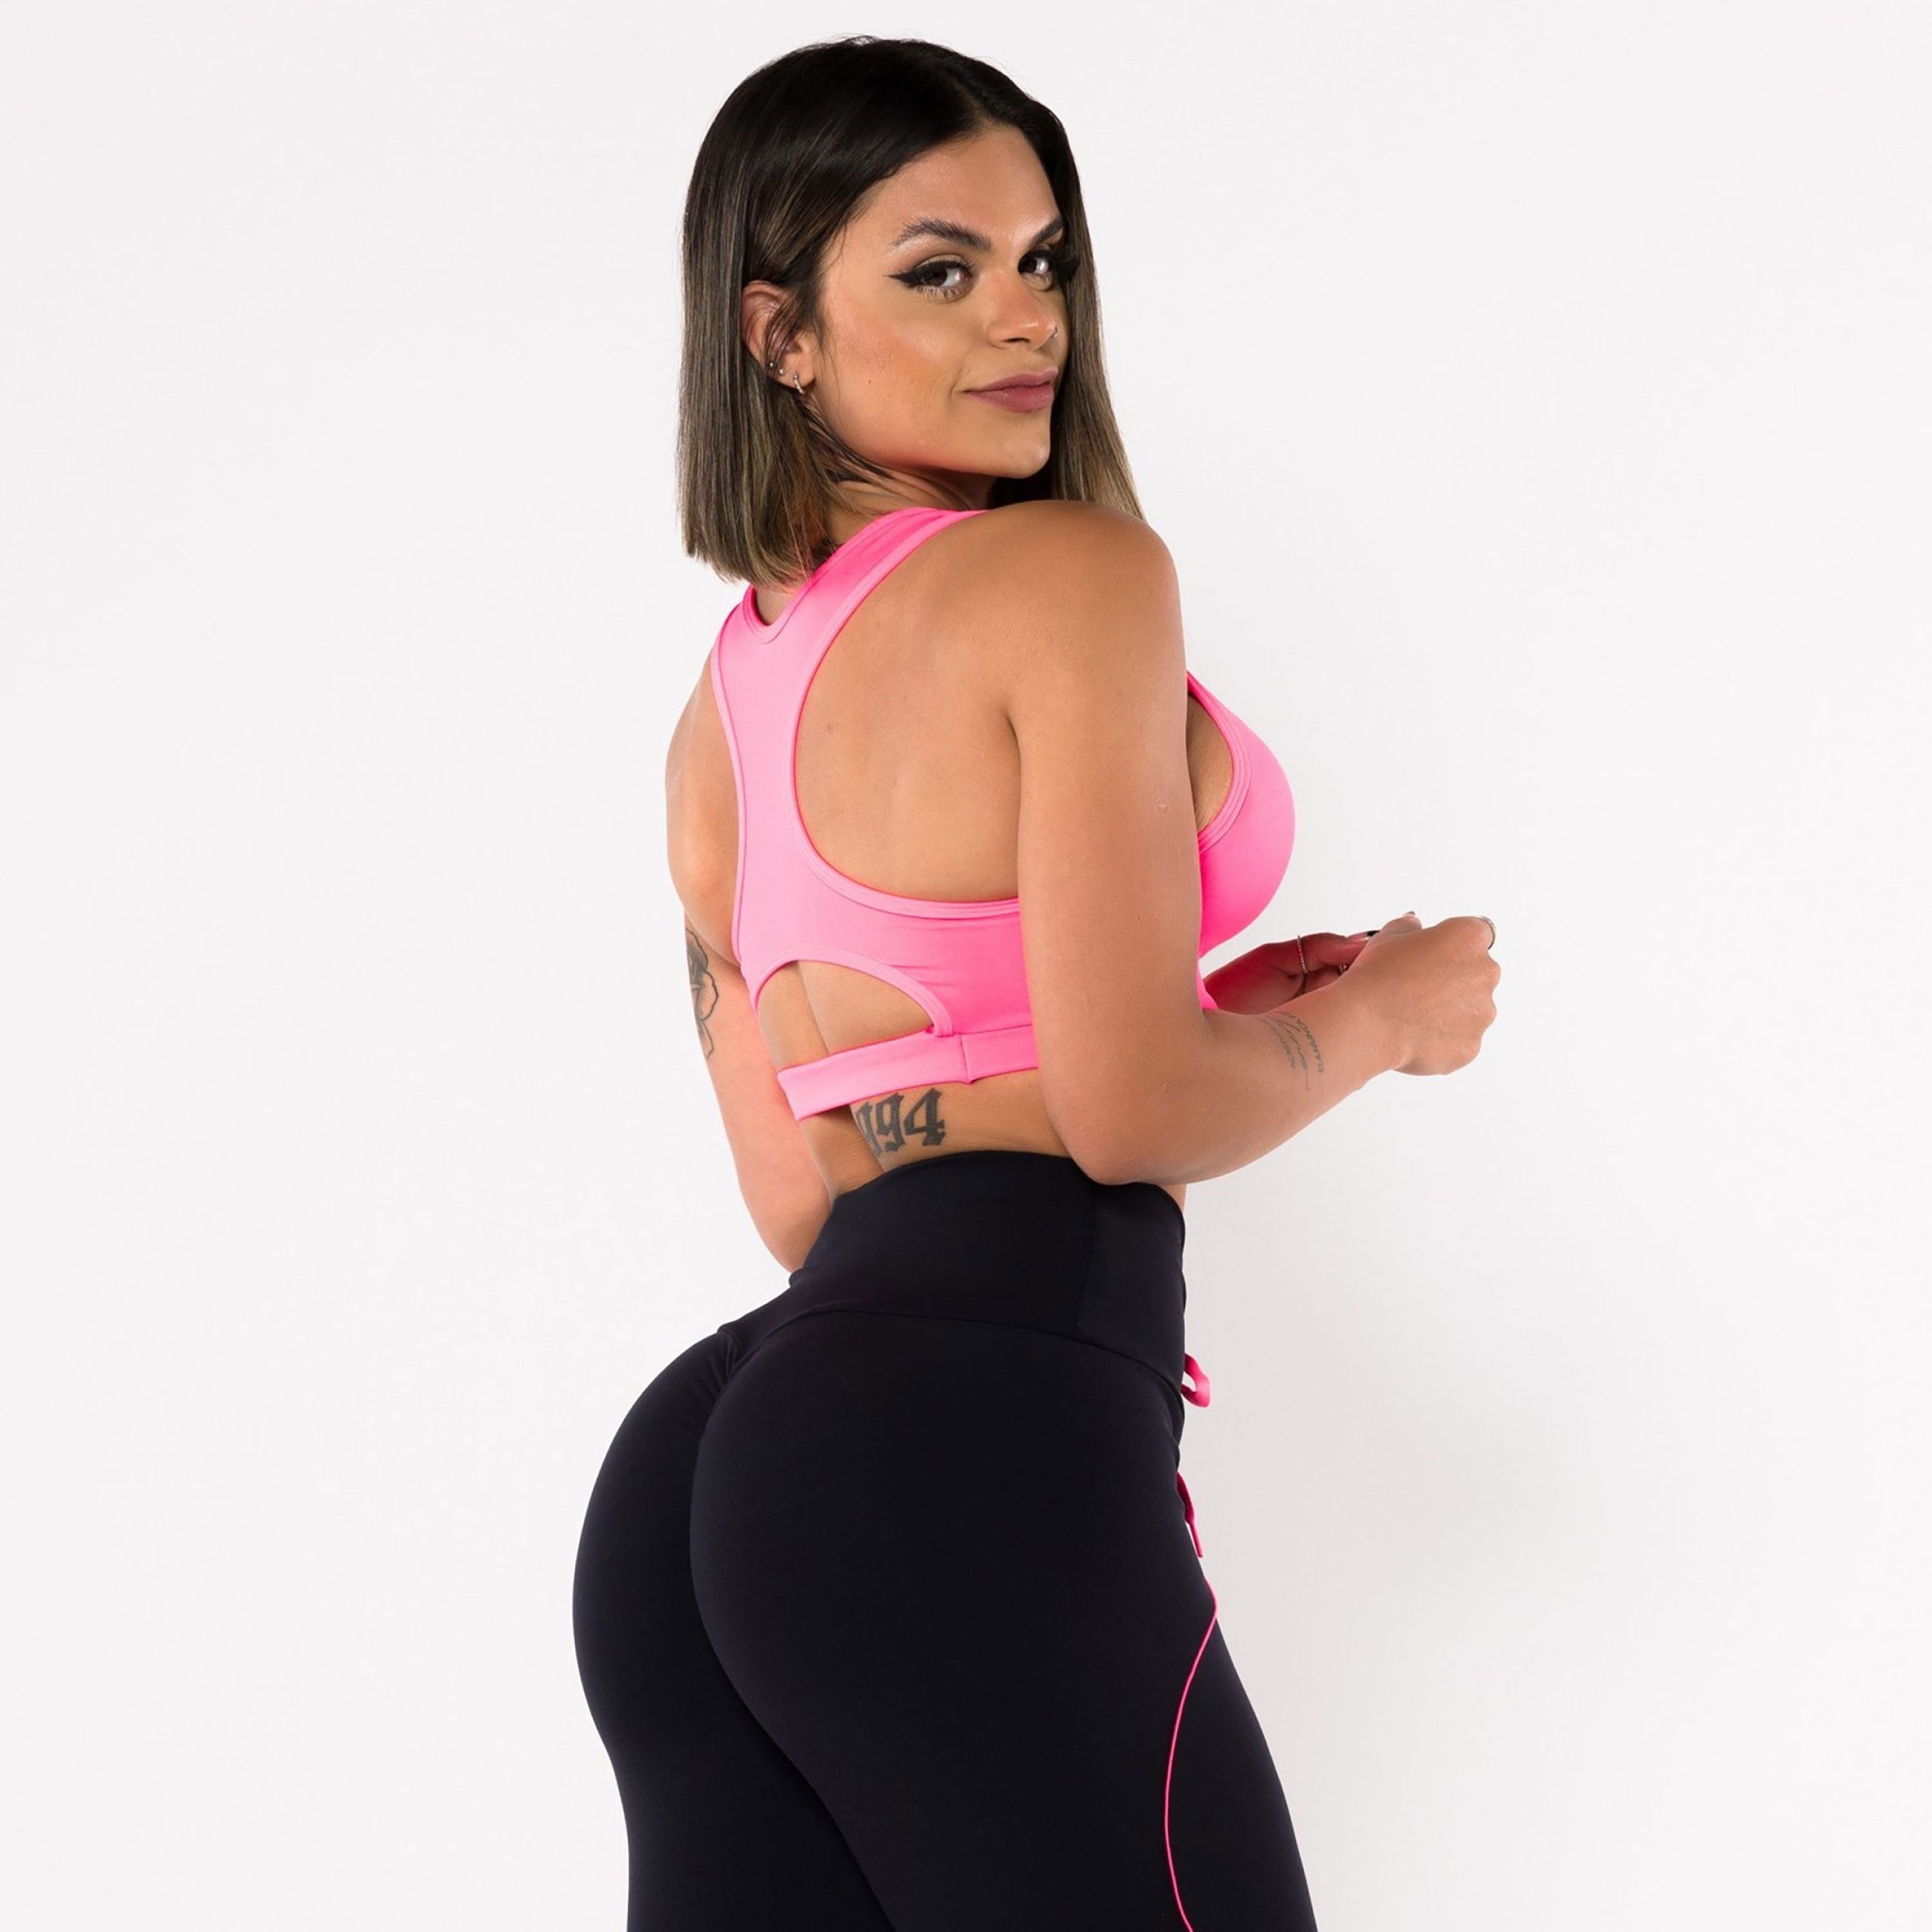 Legging Empina Bumbum Preta com Cadarço Rosa Neon - Moving Fitness Wear